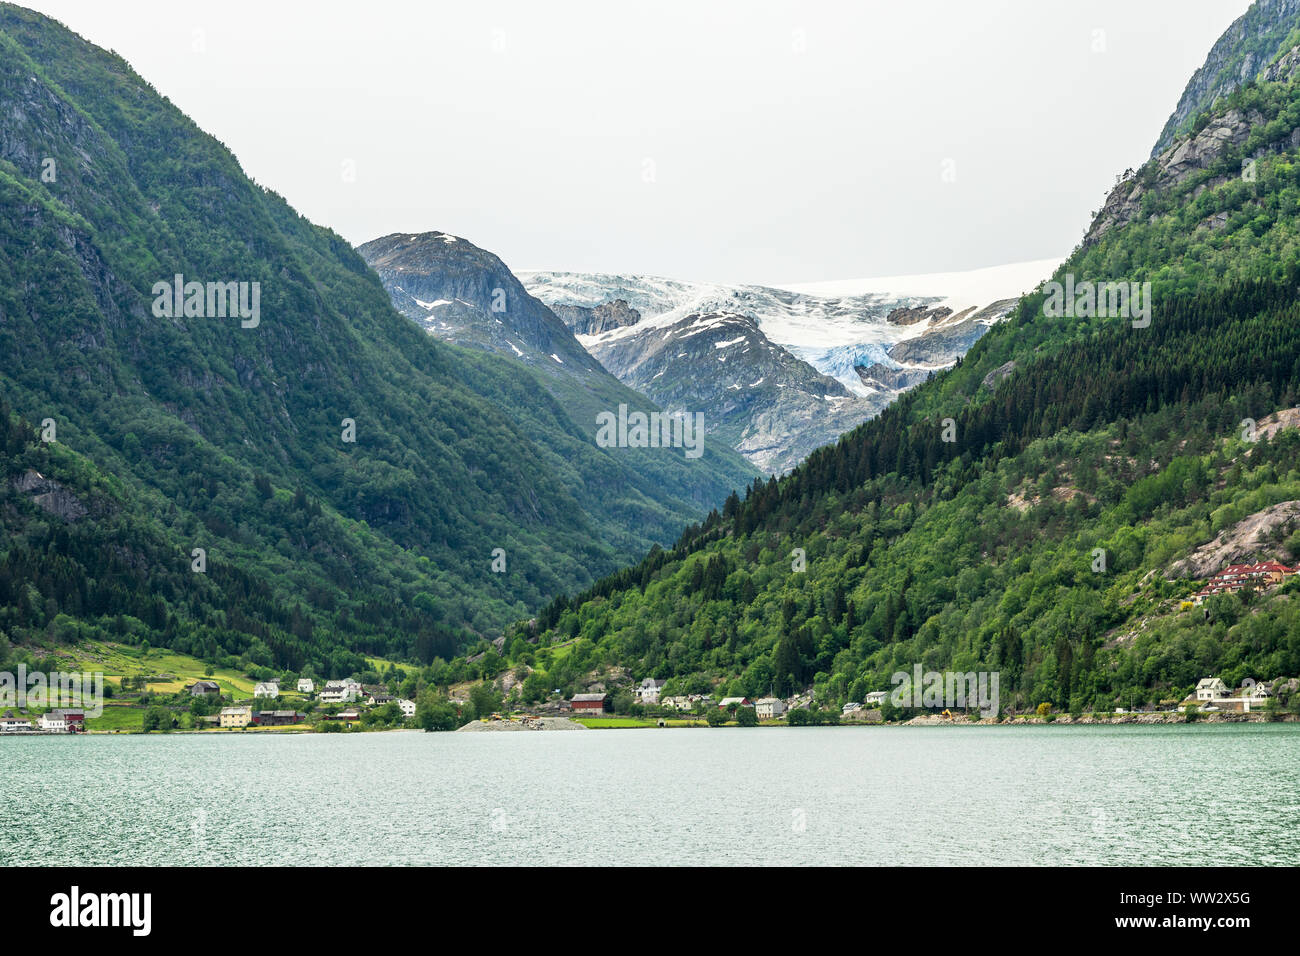 El glaciar Folgefonna cap en las montañas con el lago y el pueblo en primer plano, Odda, región de Hardanger, condado de Hordaland, Noruega Foto de stock